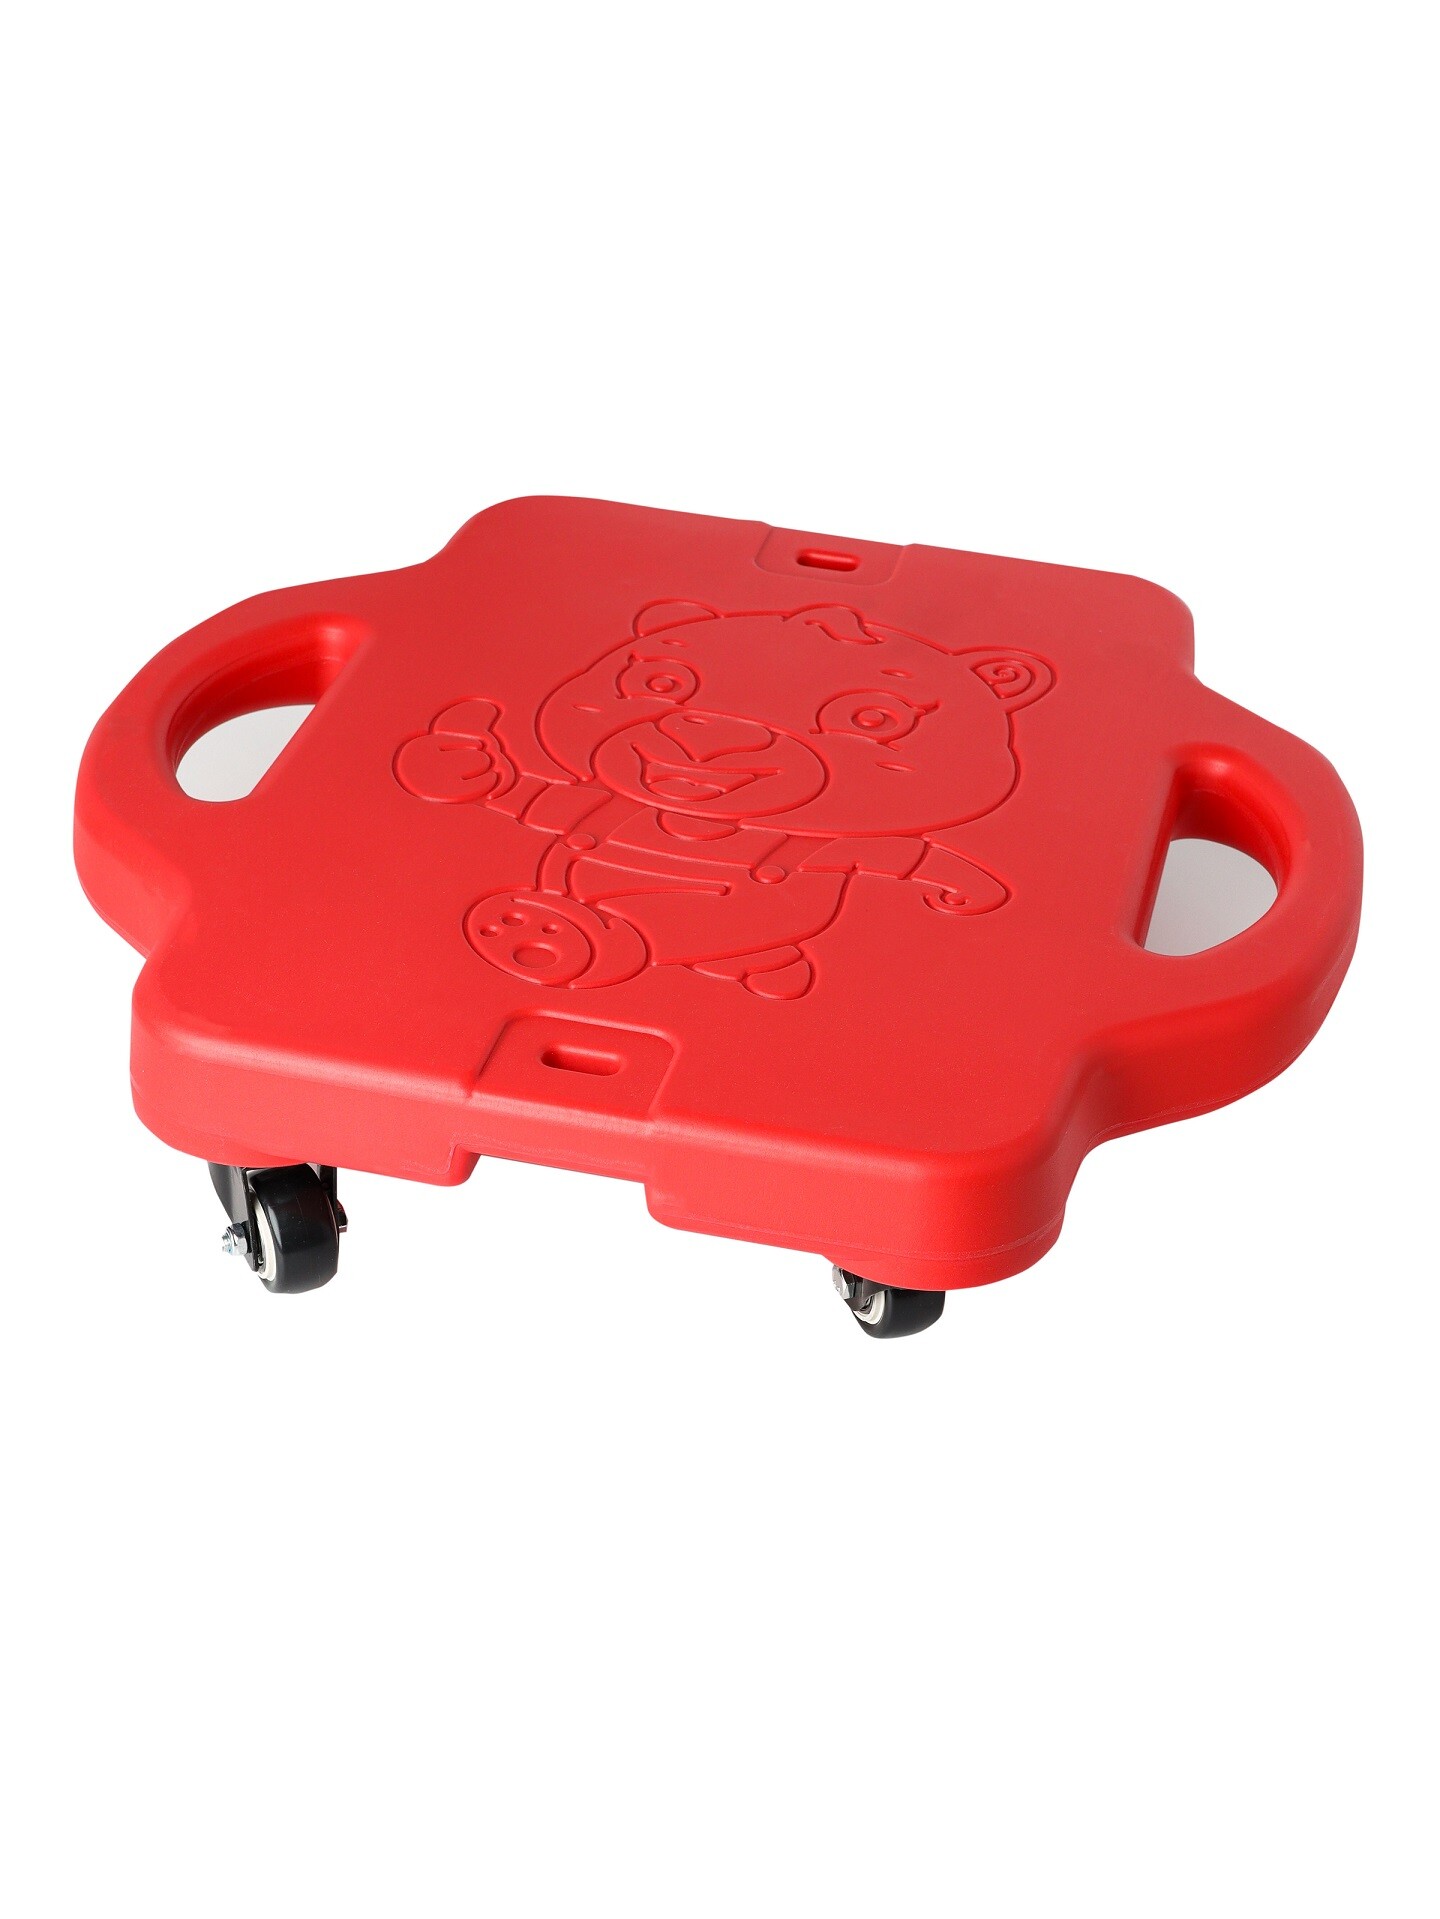 фото Скейтборд solmax четырехколесный самокат, для детей и взрослых, красный цвет sm06959